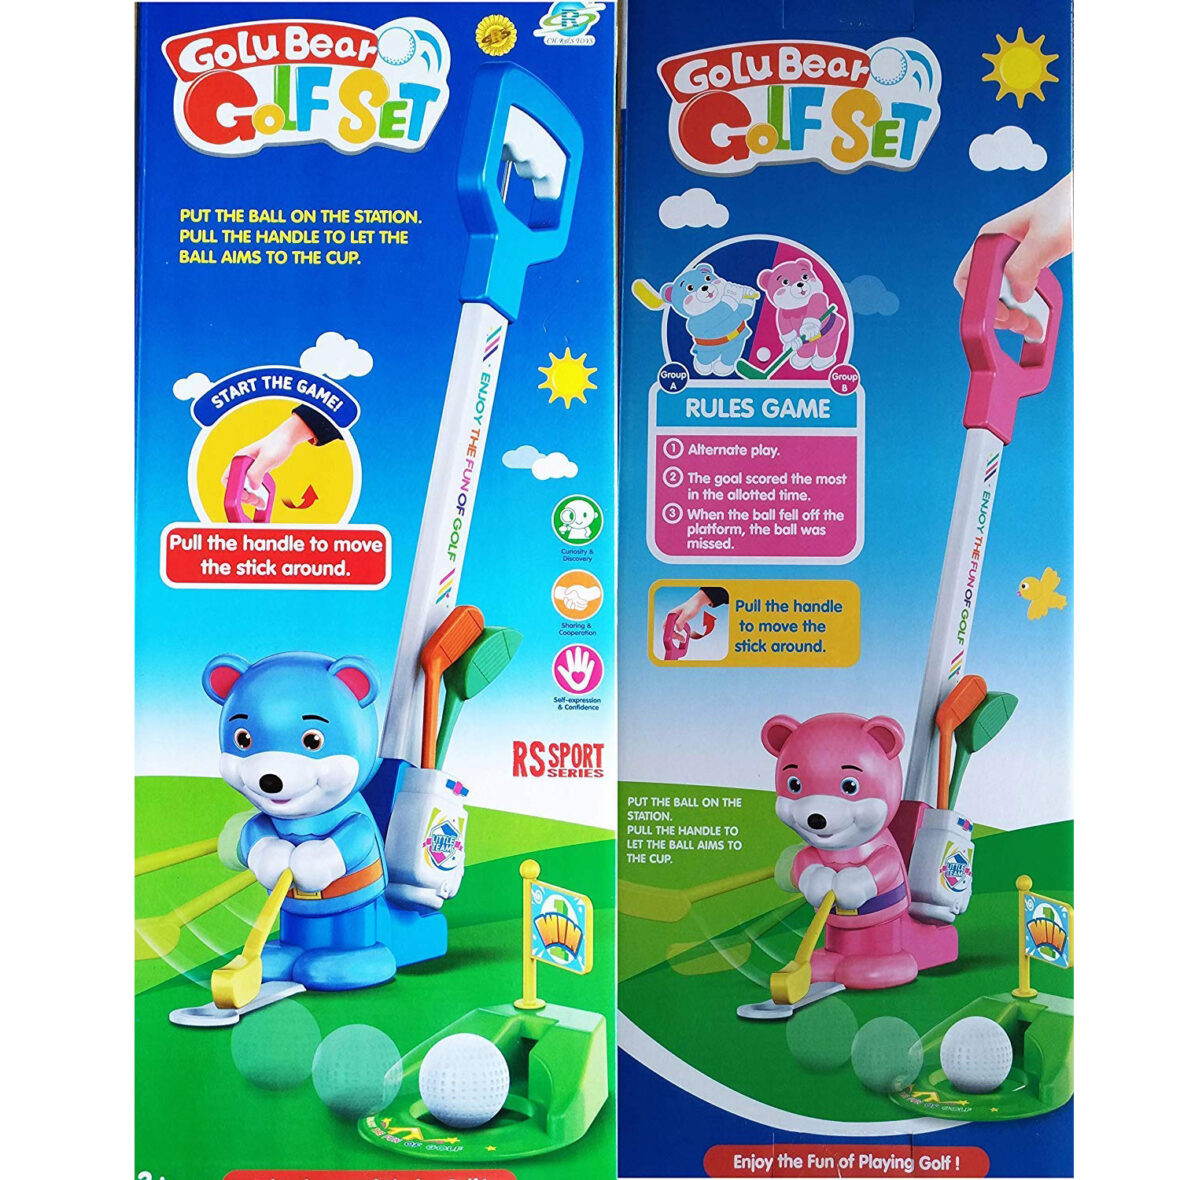 U Smile Golu Bear Golf Set Sports Indoor & amp; Outdoor Games for Kids (Multi-Color)